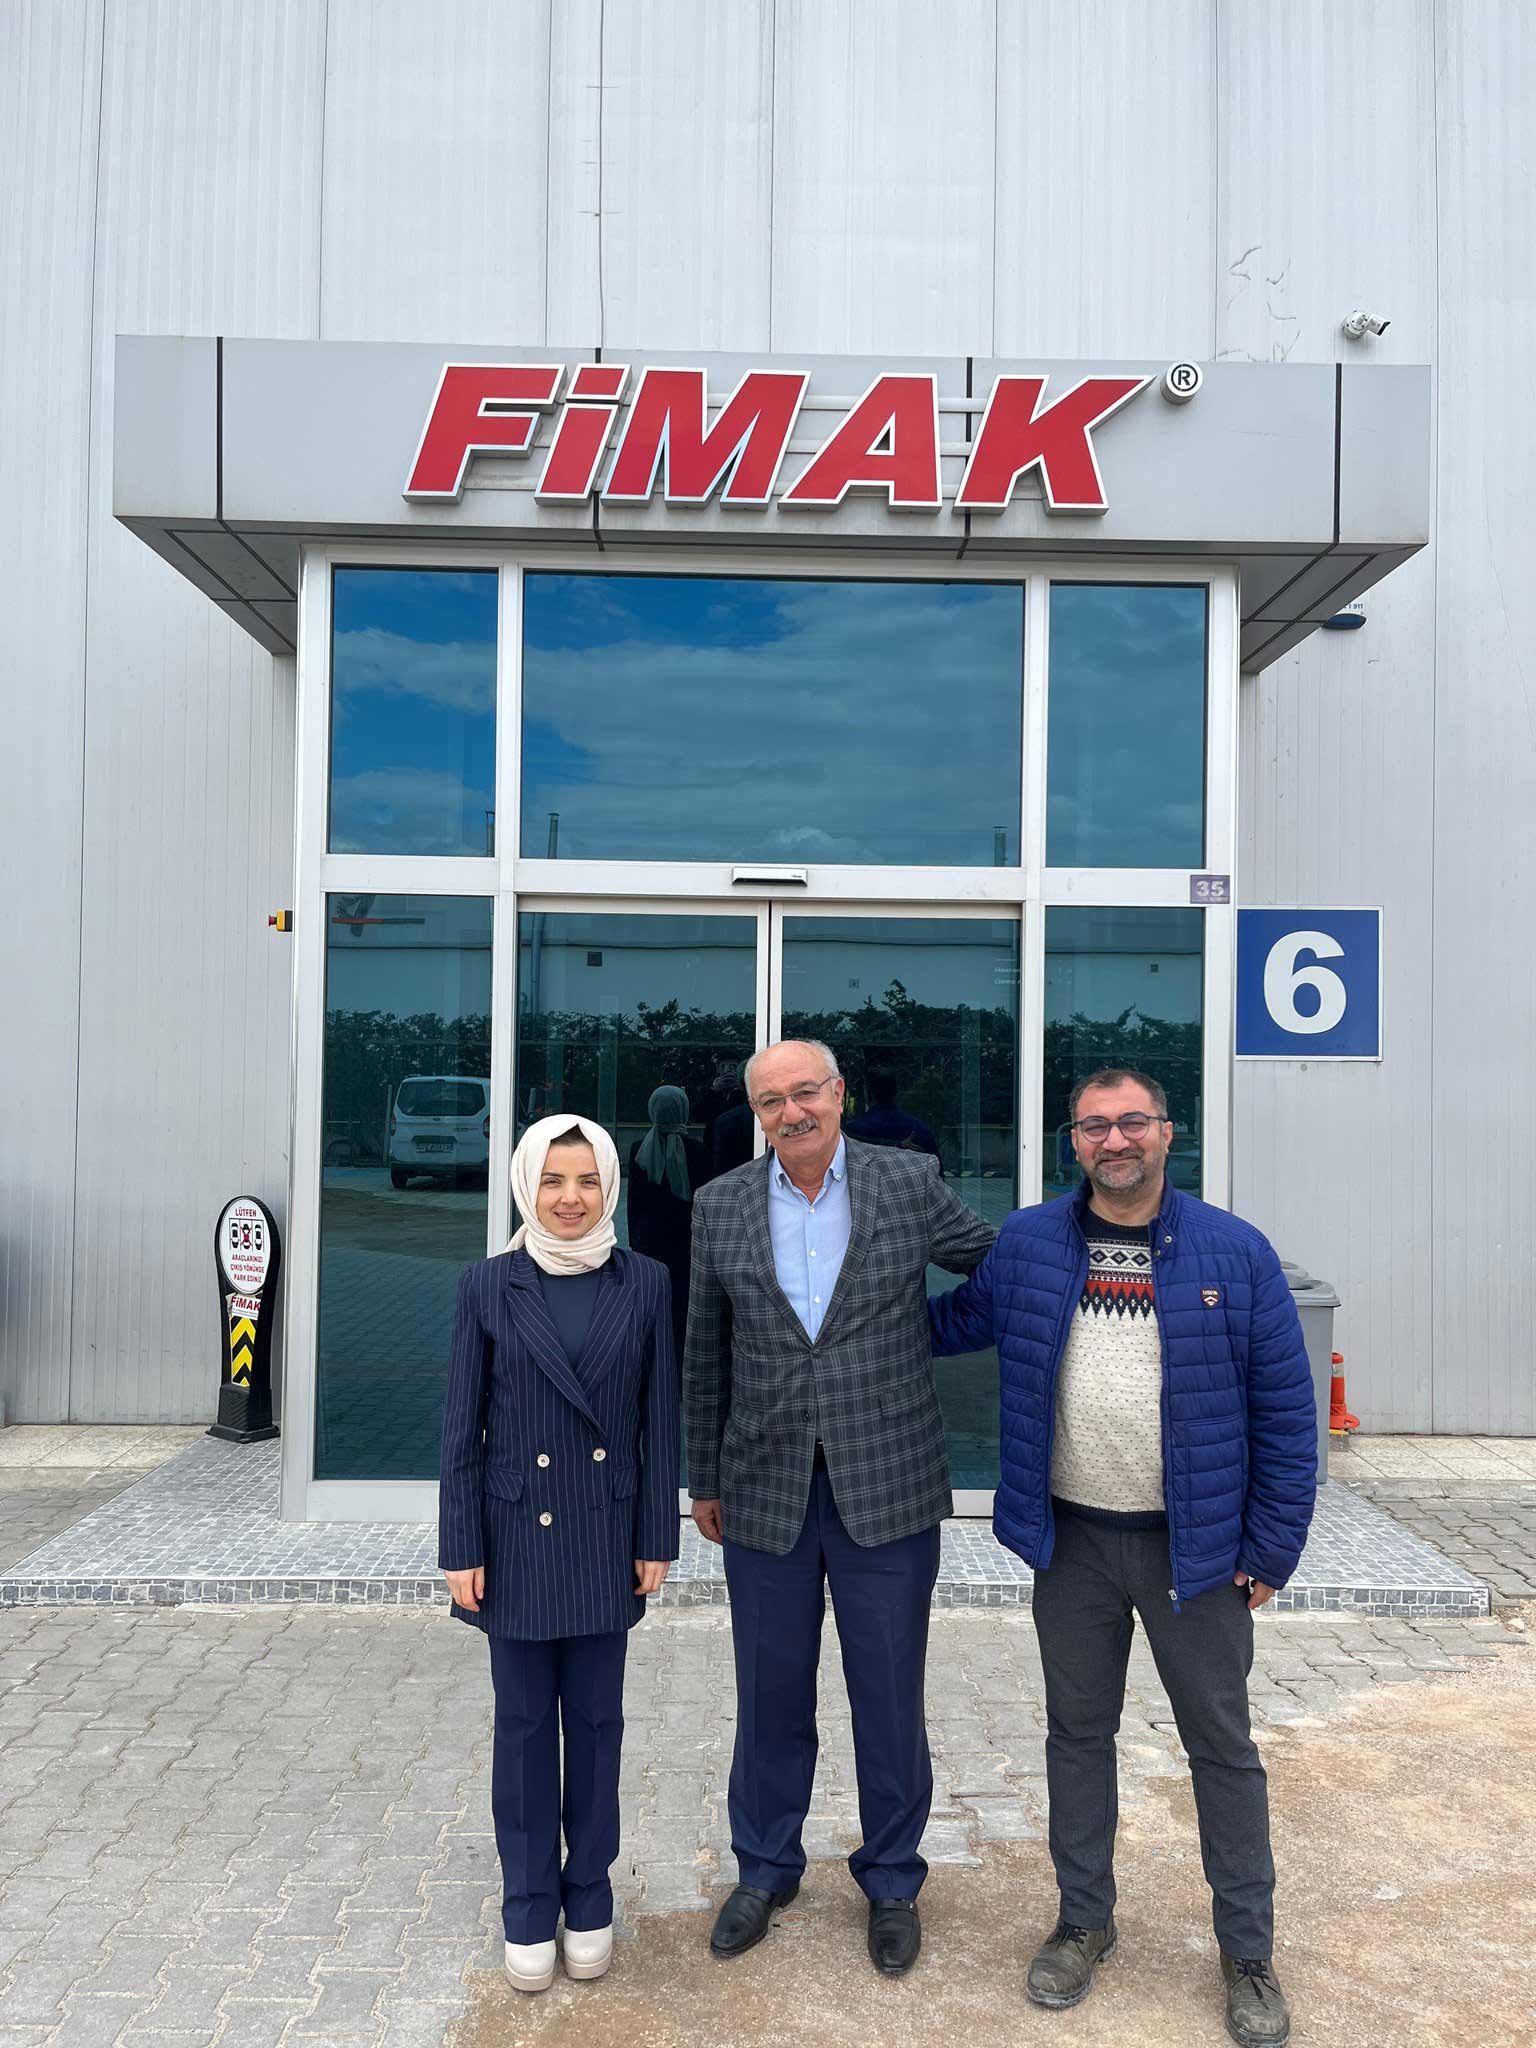 Konya Kaymakamı Saliha Karataş Aksekili, FİMAK'ın sahibi Mehmet Özpınar'ı ziyaret etti ve yerli iş insanlarına destek çağrısı yaptı.